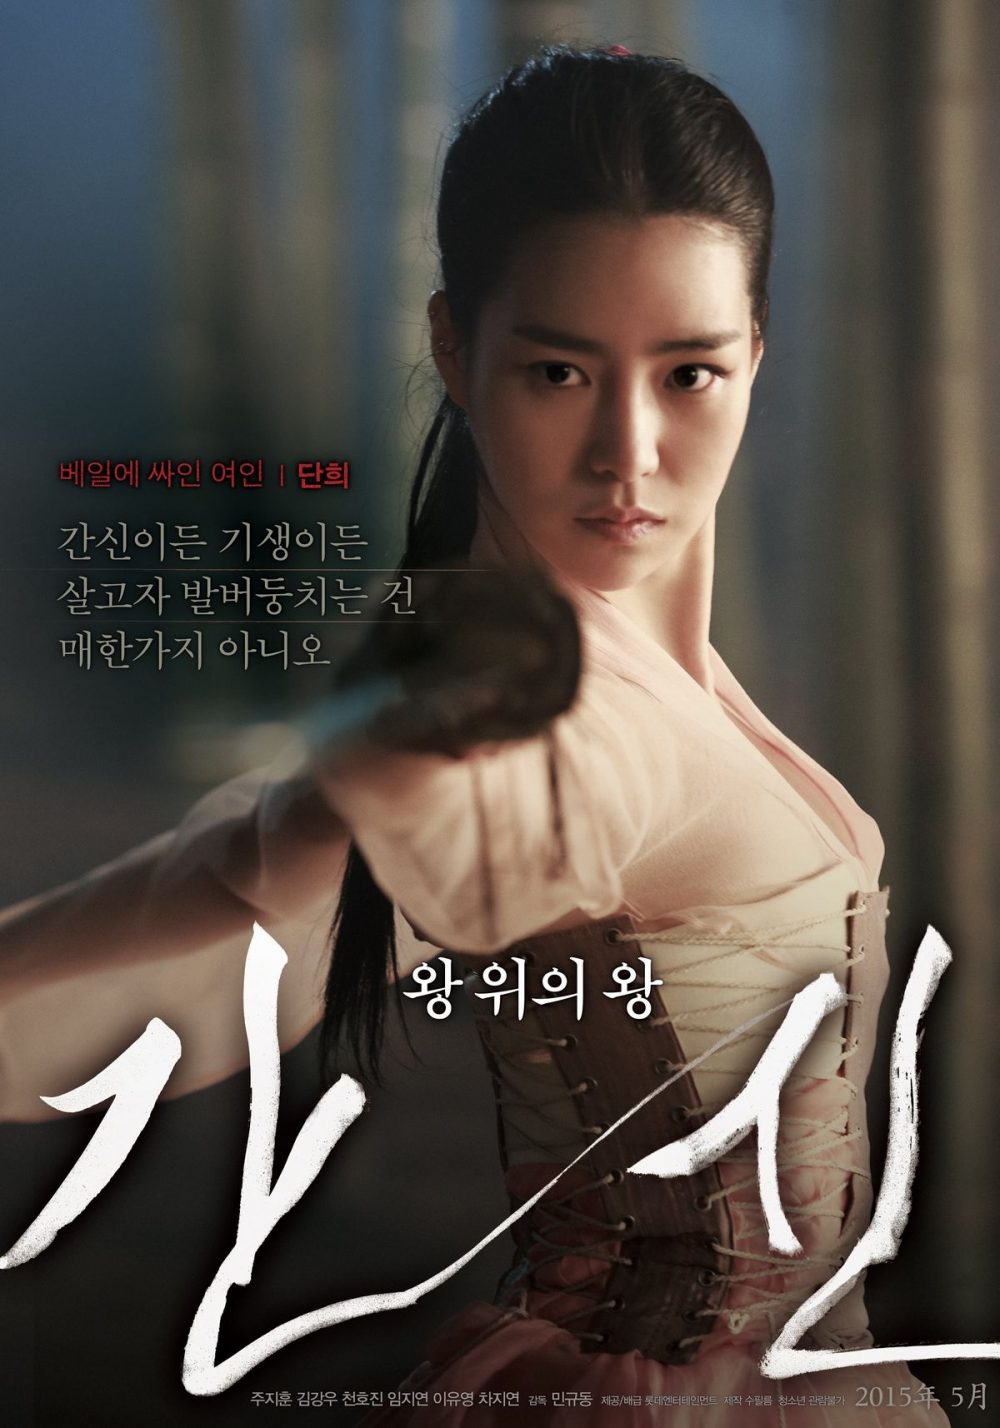 harper bazaar phim cua lim ji yeon 2 1 e1658638279335 - 8 bộ phim gây sự chú ý của “nữ hoàng cảnh nóng” Lim Ji Yeon